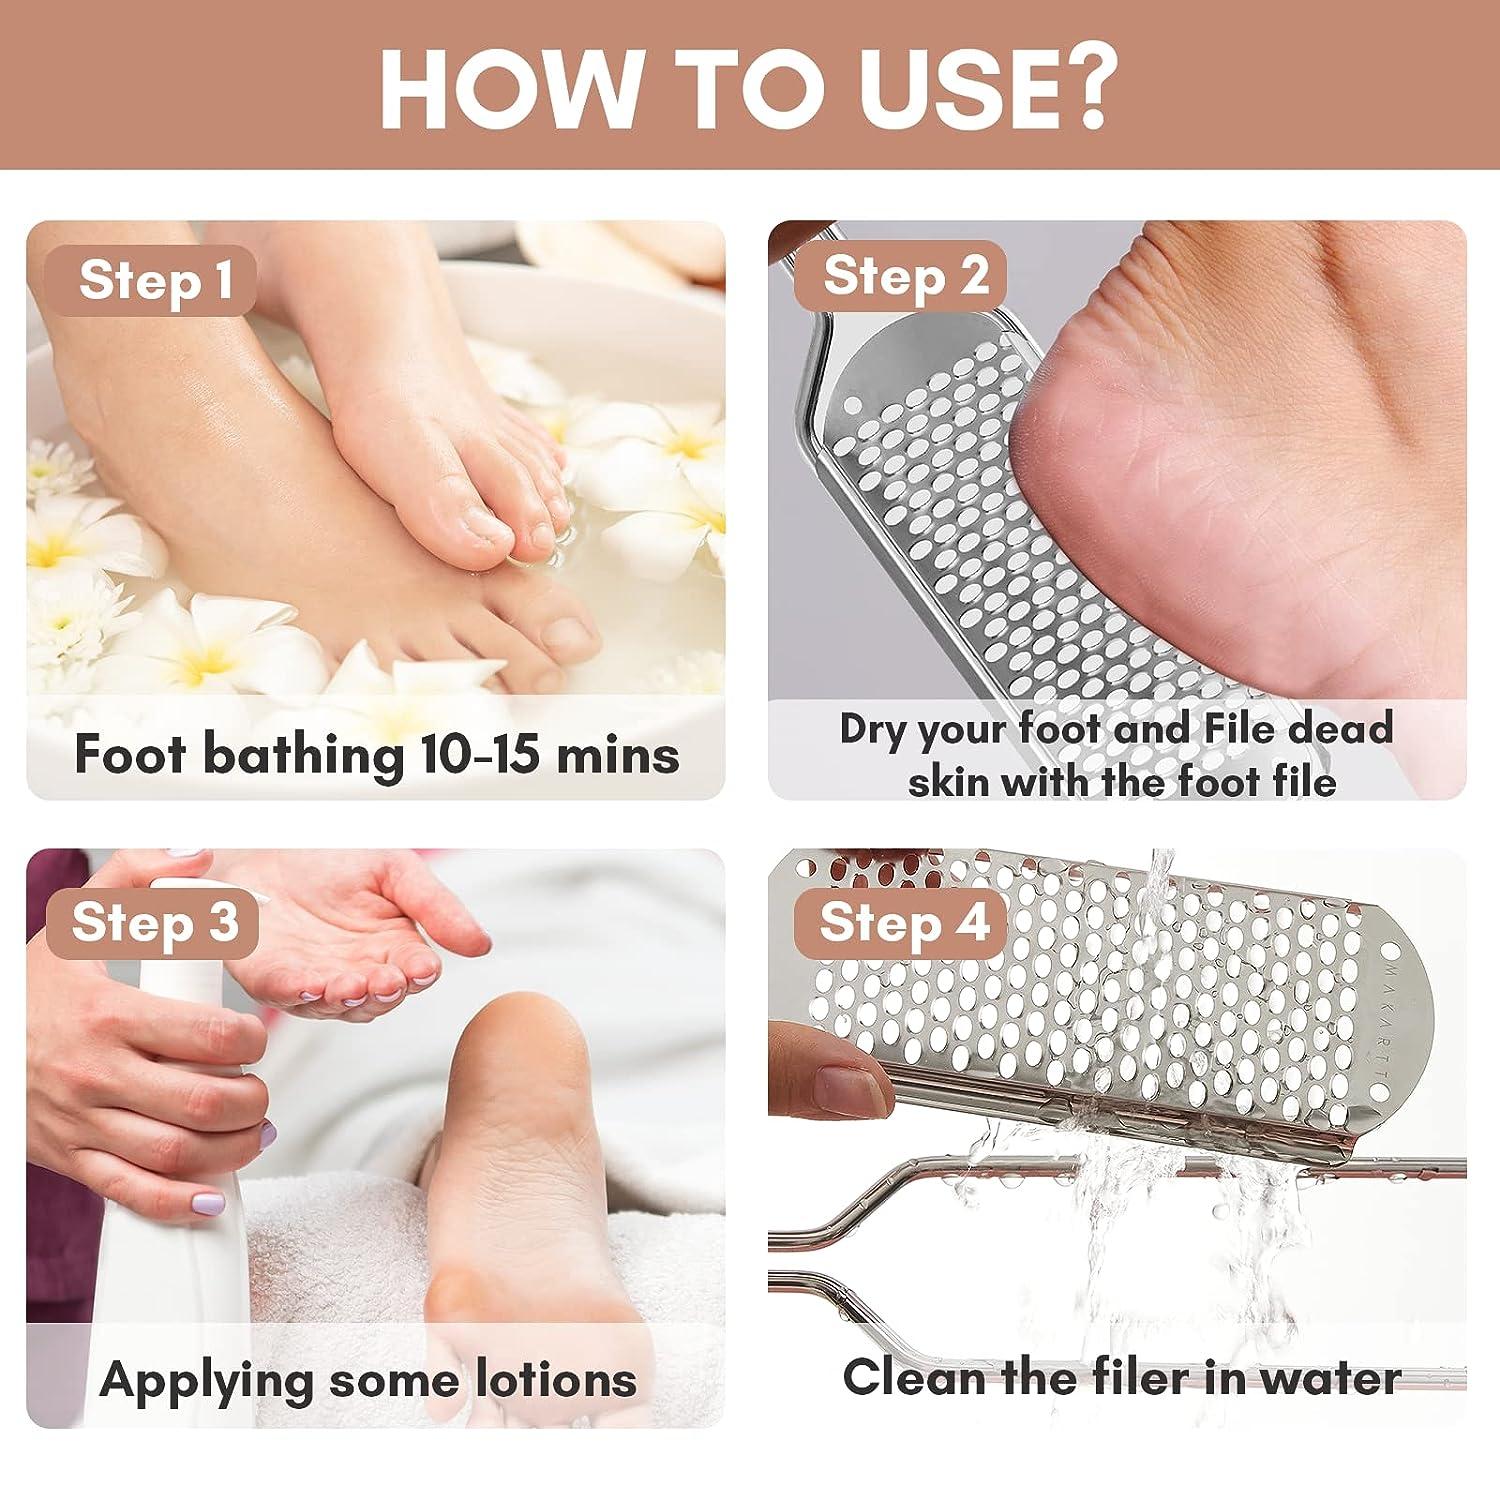 Genuine Feet Scrubber Dead Skin Remover for Feet (Large) Foot File Callus Remover Foot Scrubber Dead Skin Remover Foot Rasp - Heel Scraper for Feet